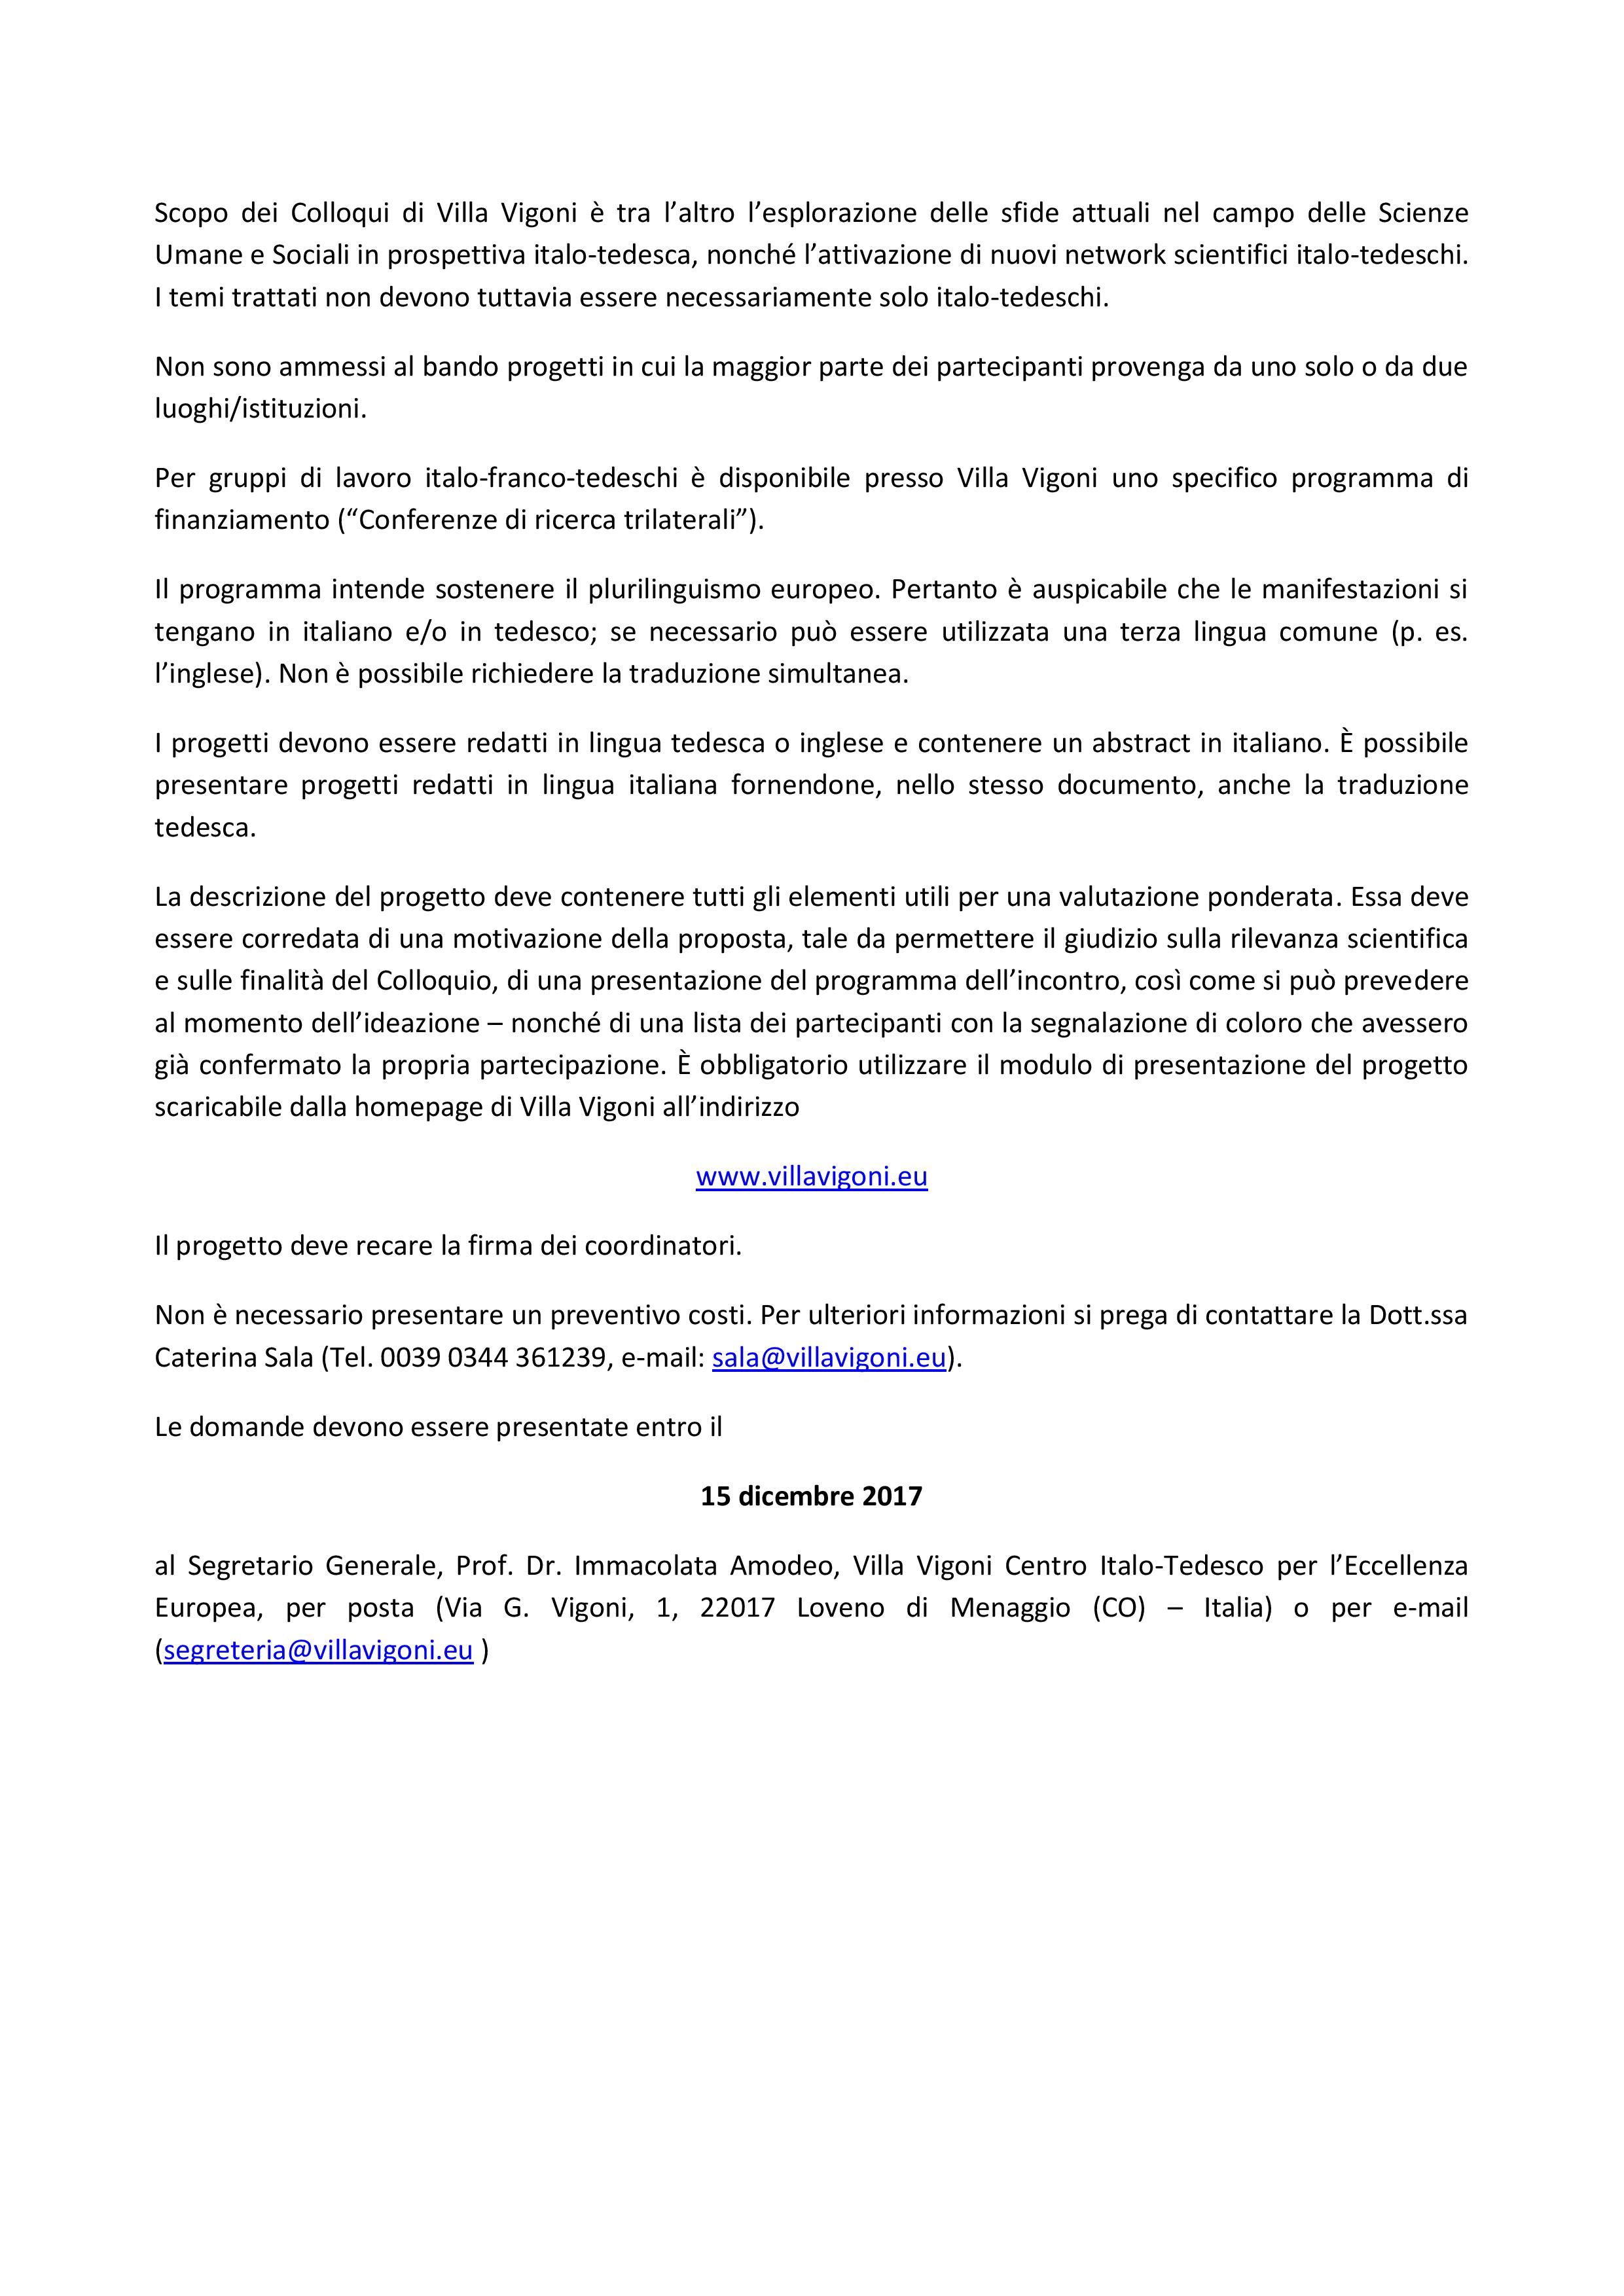 Cooperazione Italo-Tedesca_2019_BANDO-page-002